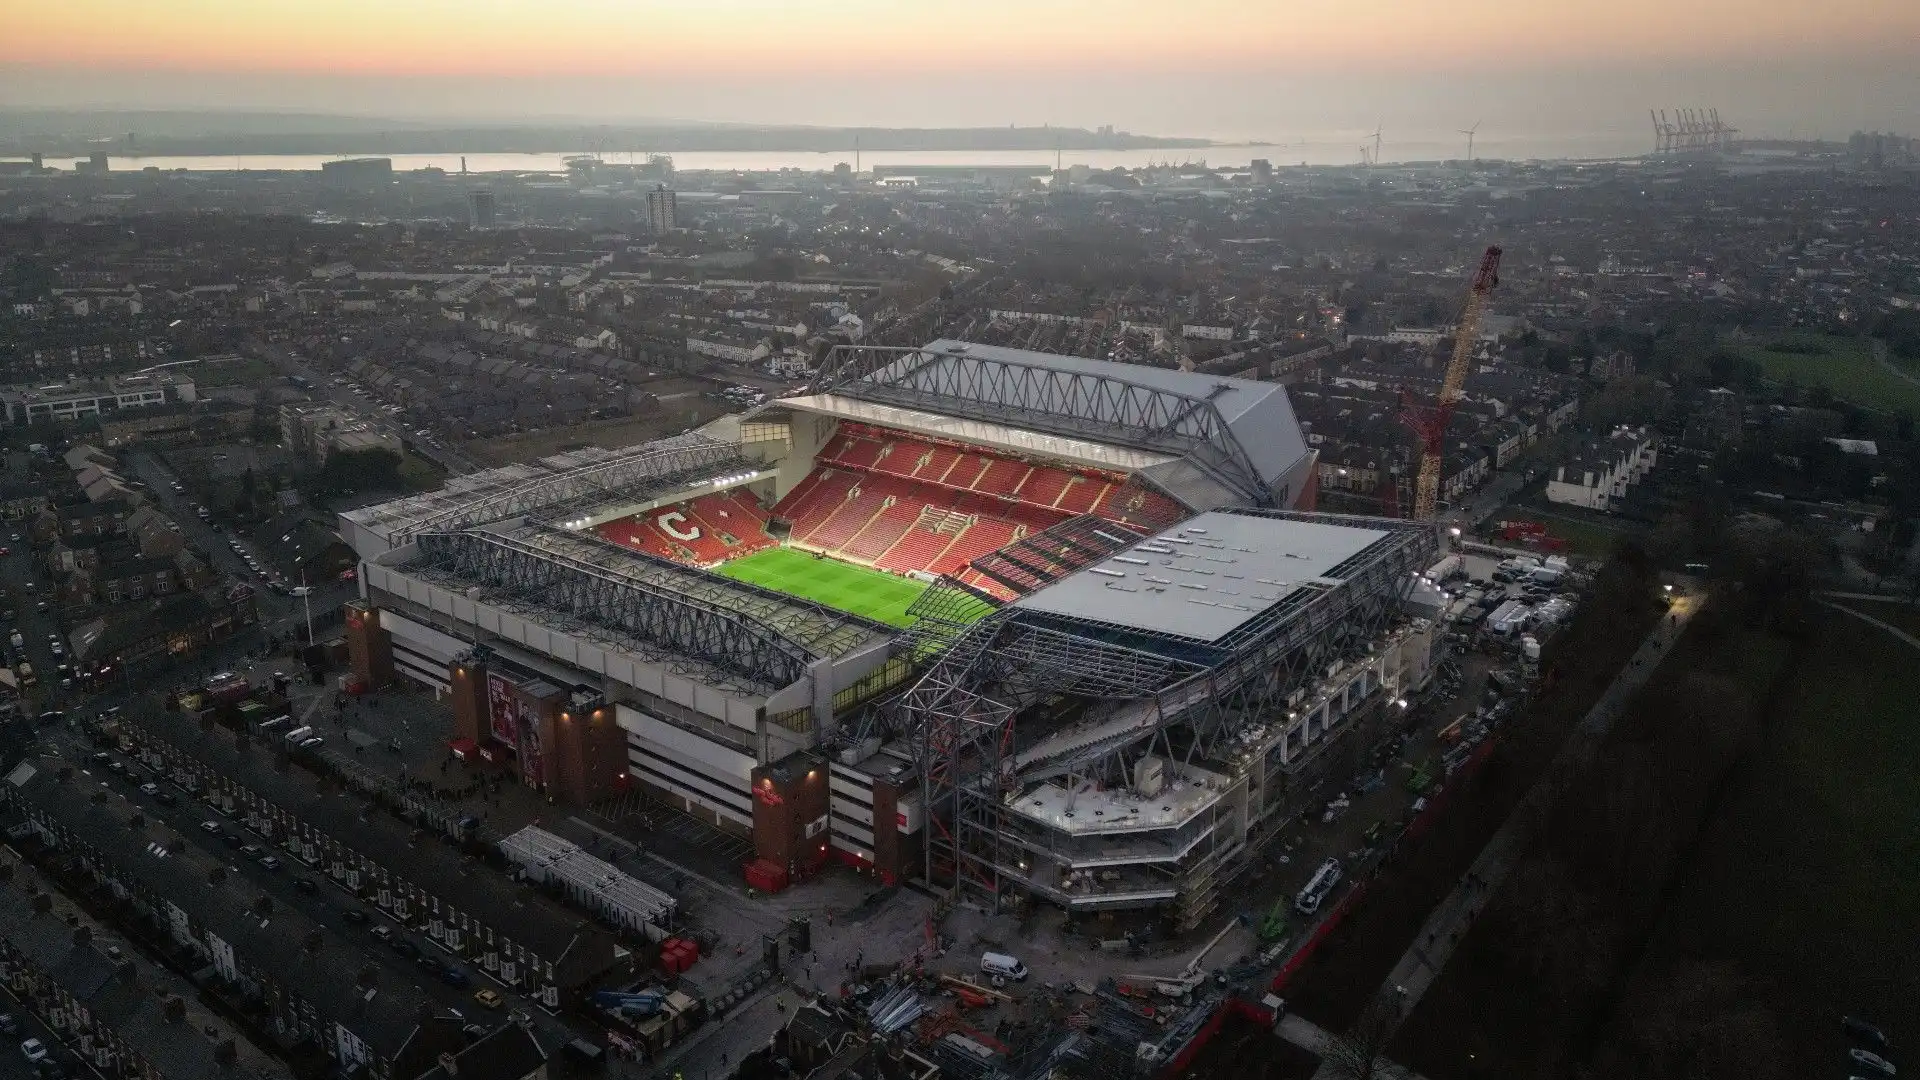 Anfield - Liverpool, Inghilterra: lo stadio del Liverpool, noto per la sua capacità di creare un'atmosfera unica e coinvolgente durante le partite